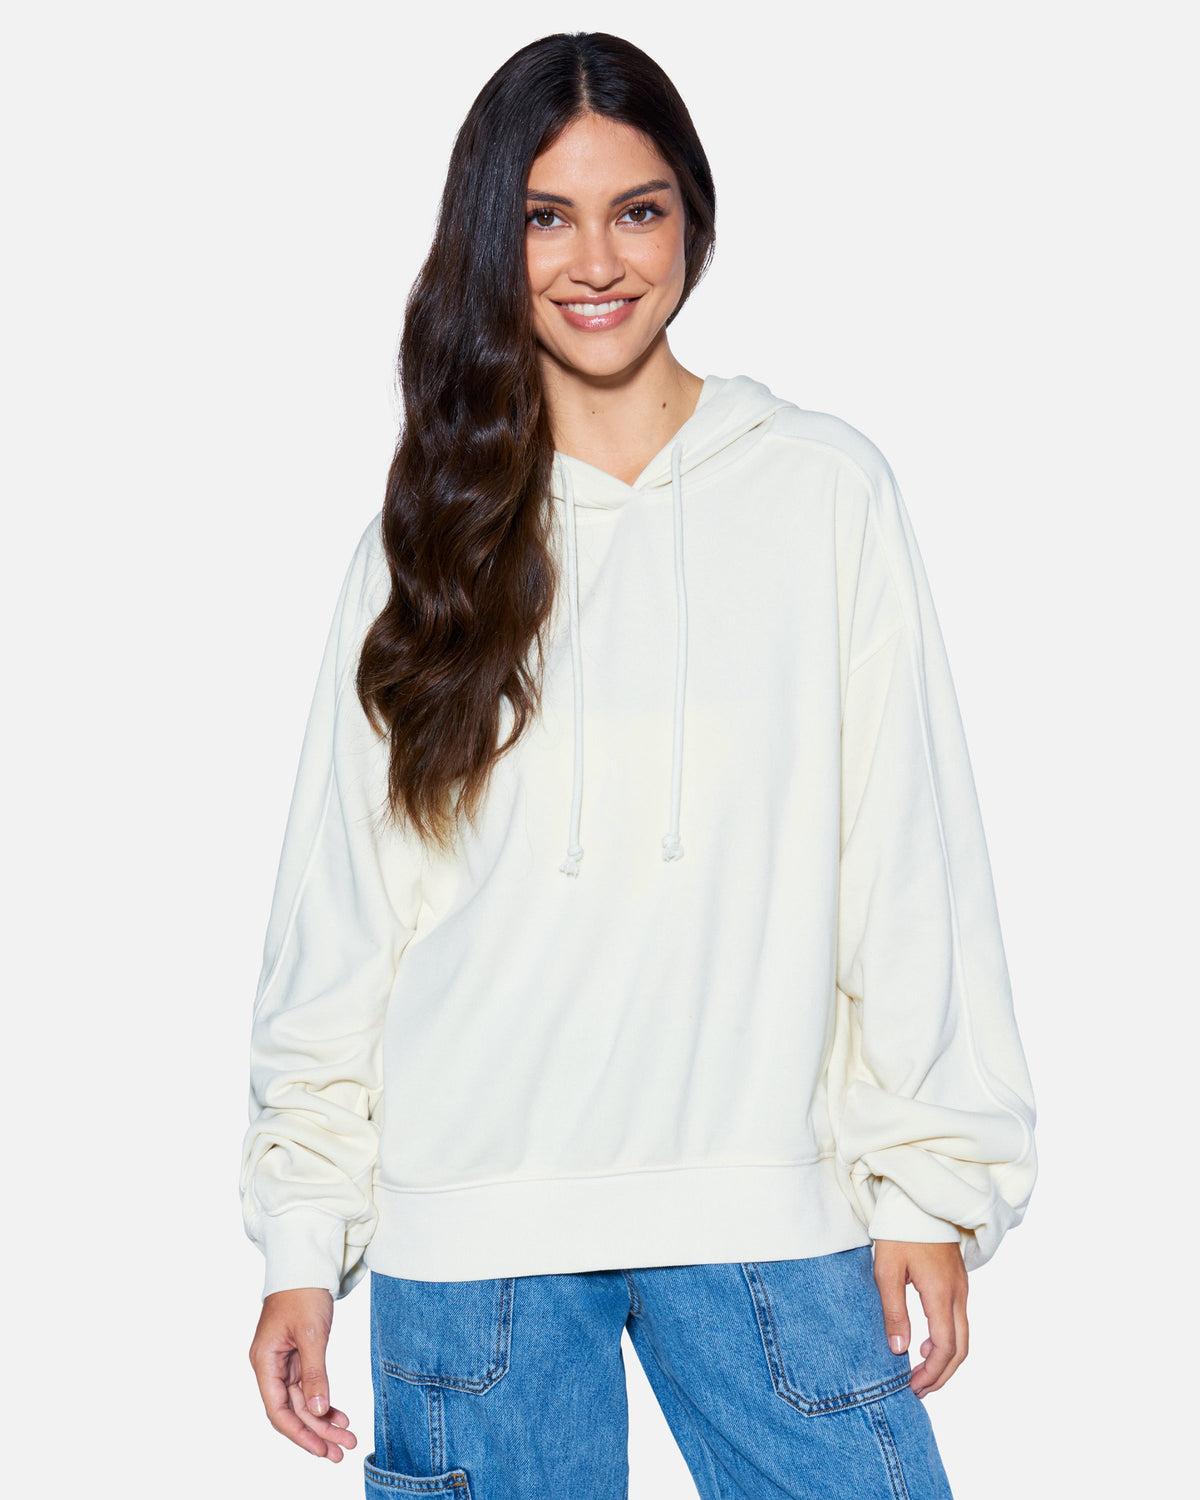 Women's Hoodies & Sweatshirts